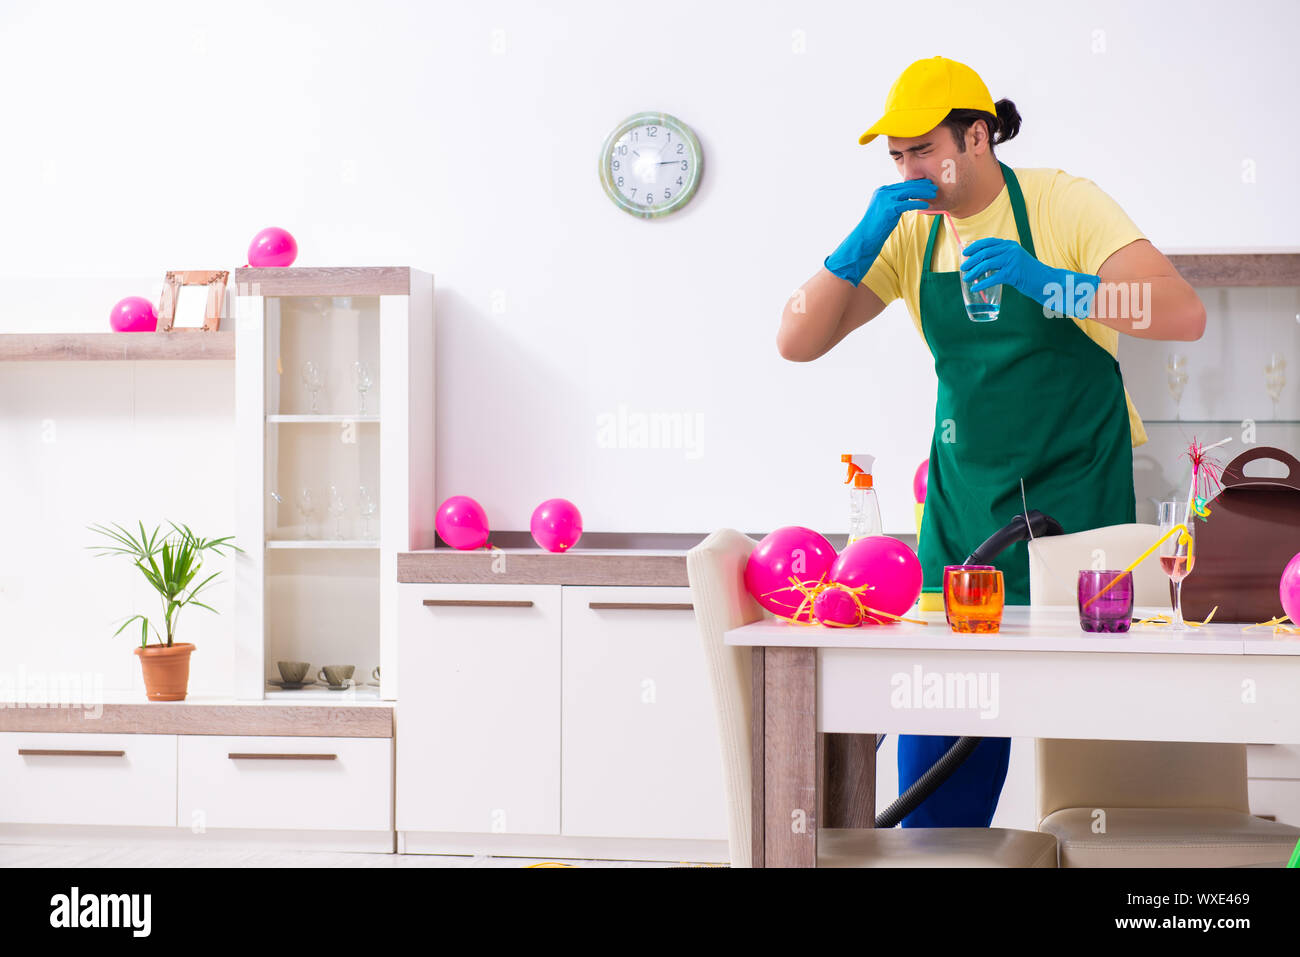 Junge männliche Auftragnehmer tun Hausarbeit nach Partei Stockfoto